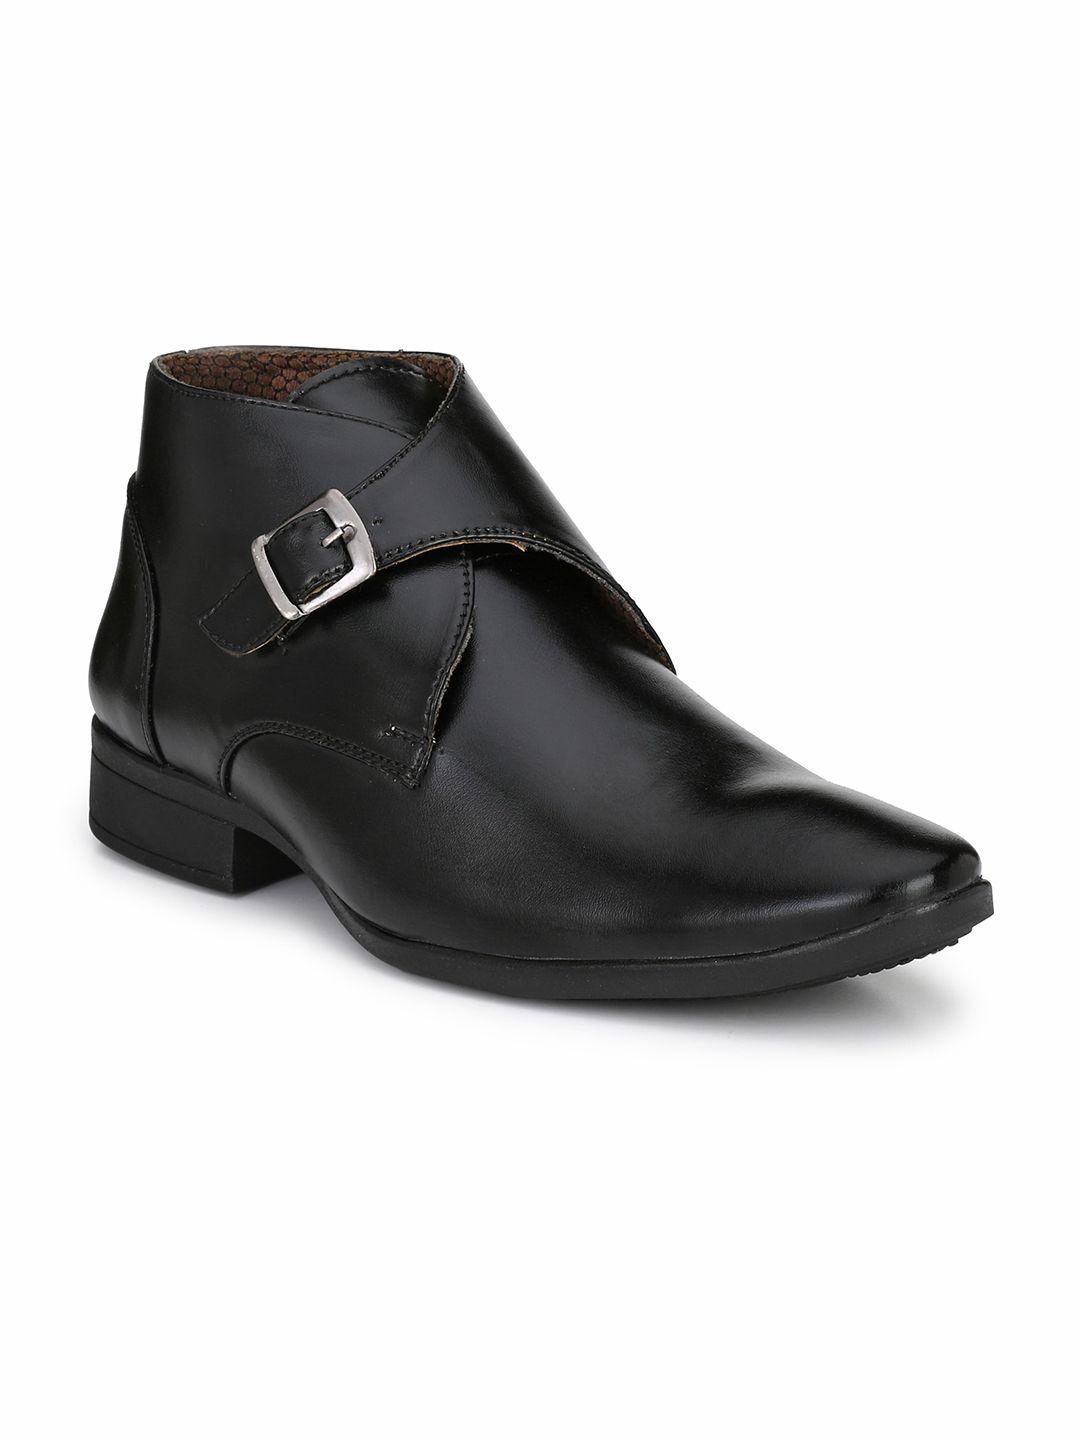 hundo p men black solid formal boots